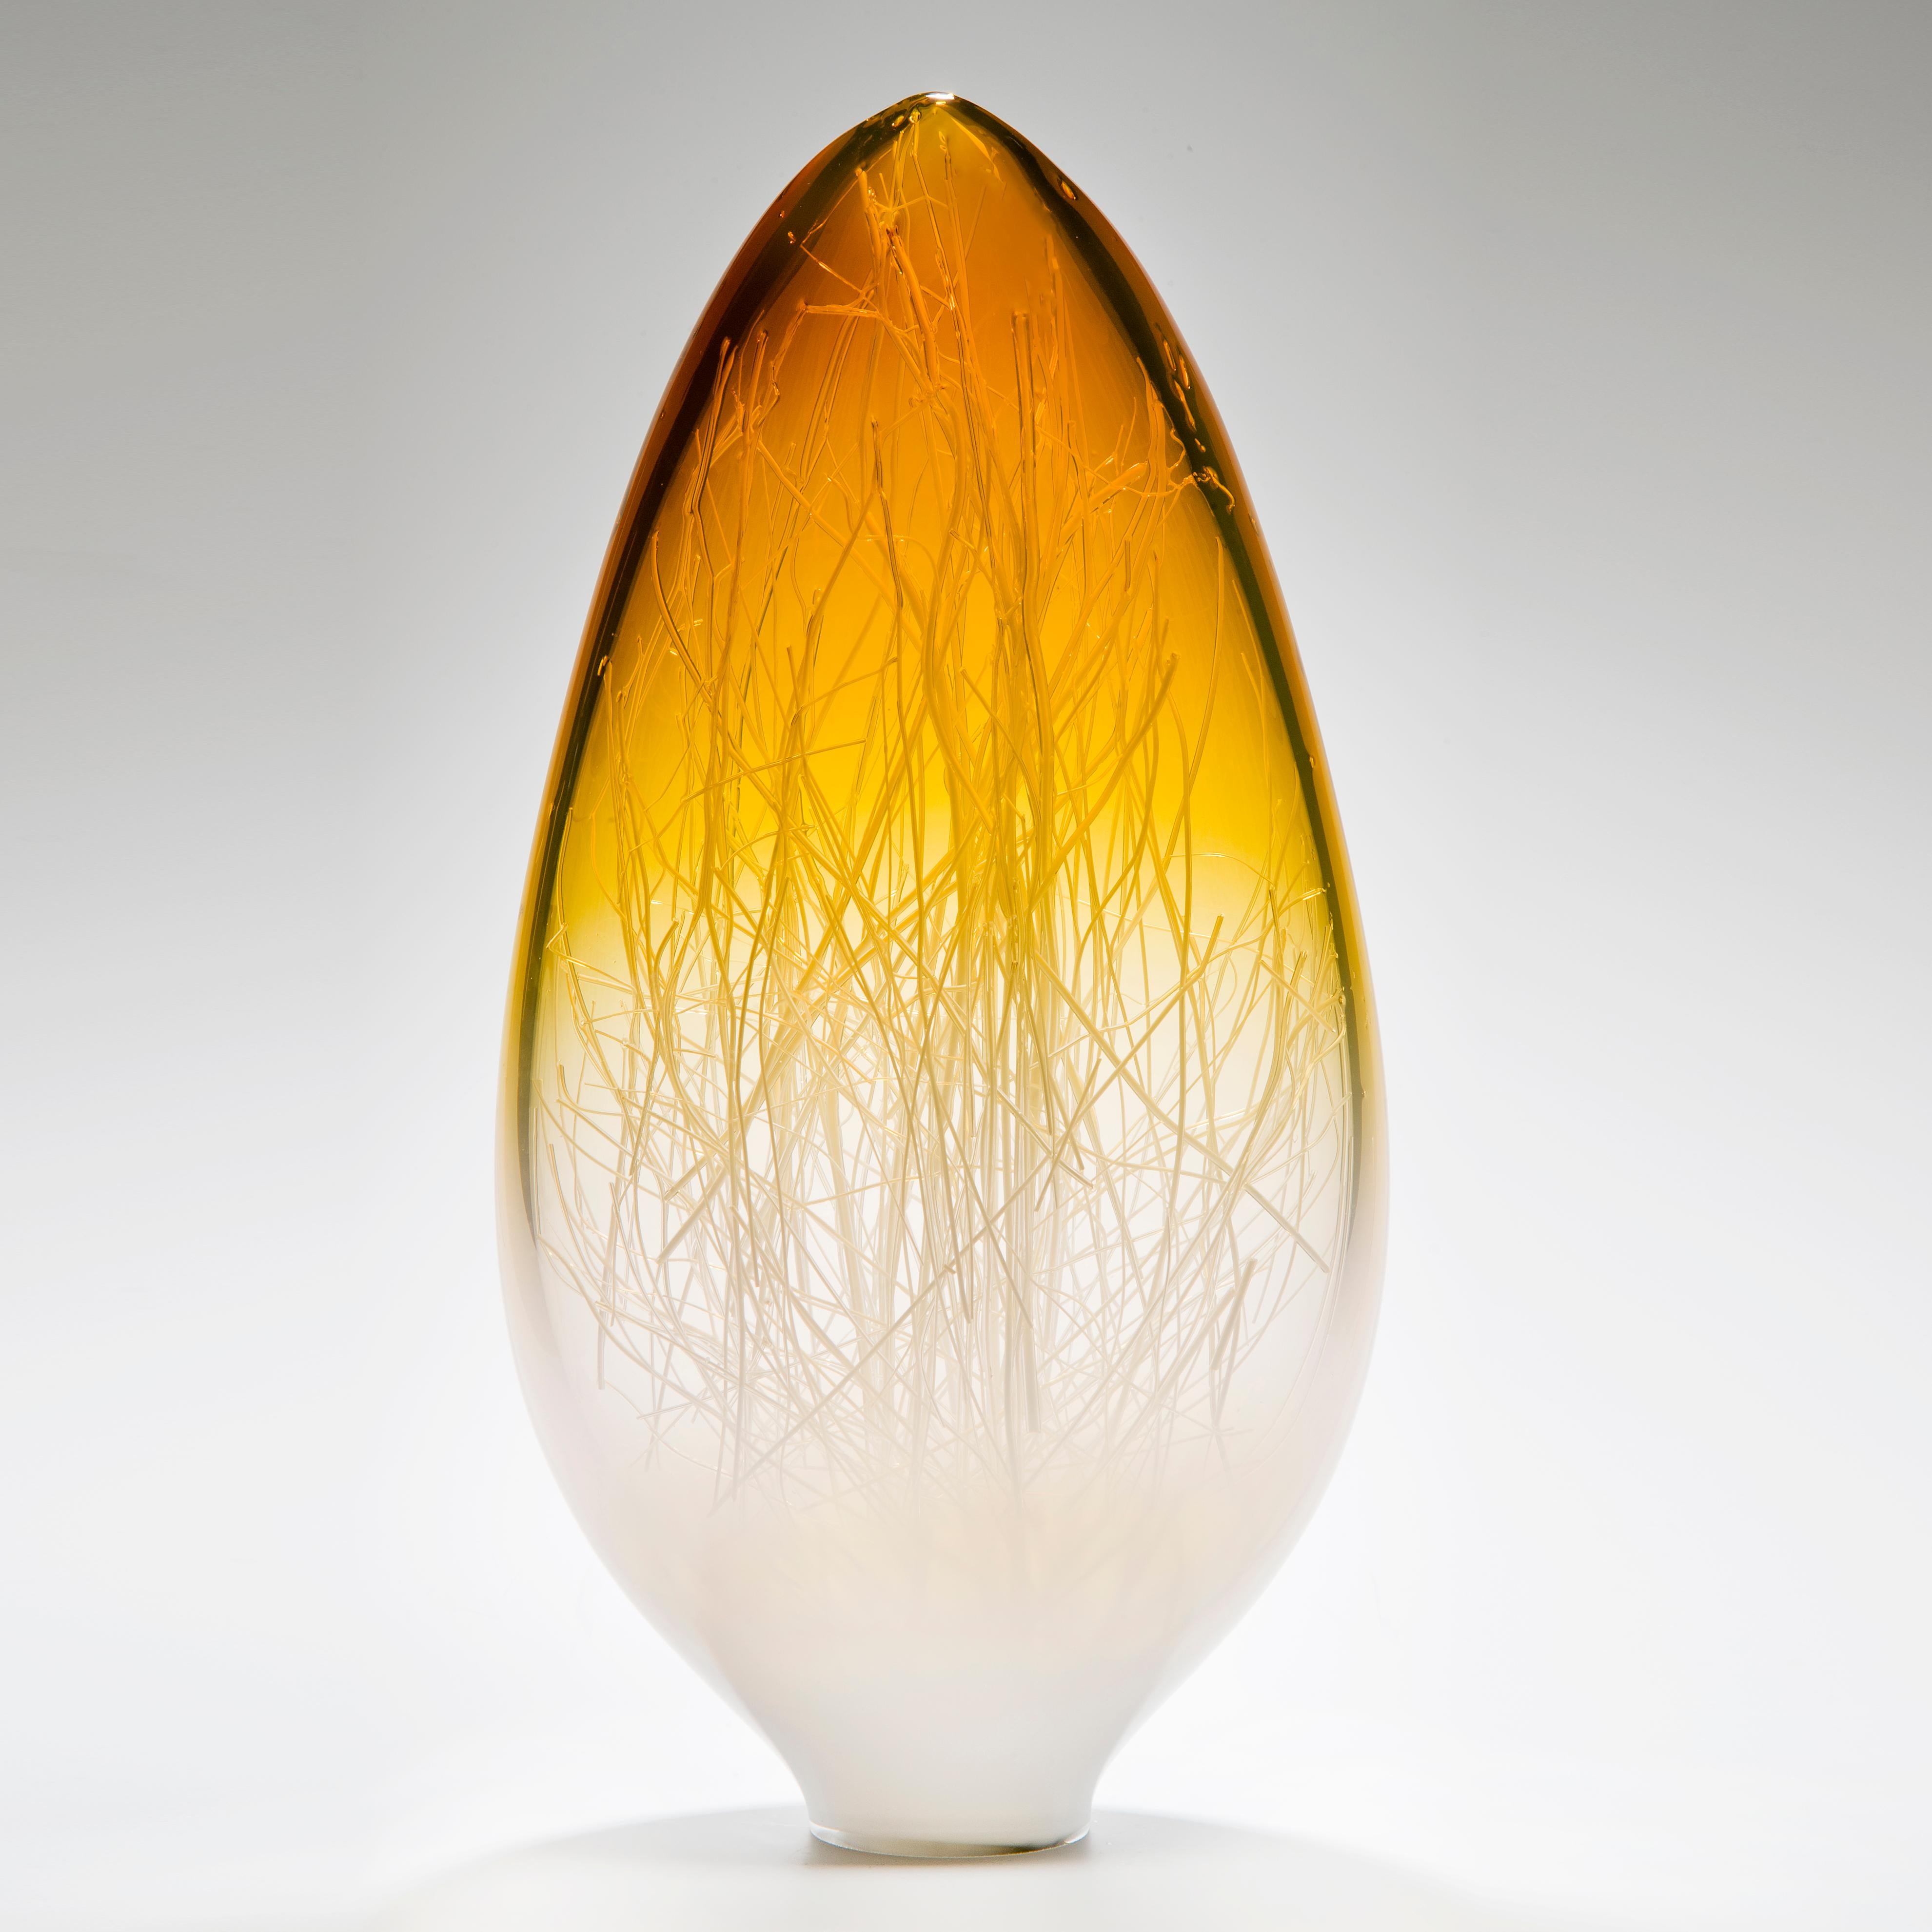 Panicum in Amber and White ist eine einzigartige Glasskulptur aus weißem, klarem und leuchtend bernsteinfarbenem Glas, die von den Künstlern Hanne Enemark (Dänin) und Louis Thompson (Brite) in Collaboration geschaffen wurde. Die äußere Glasform